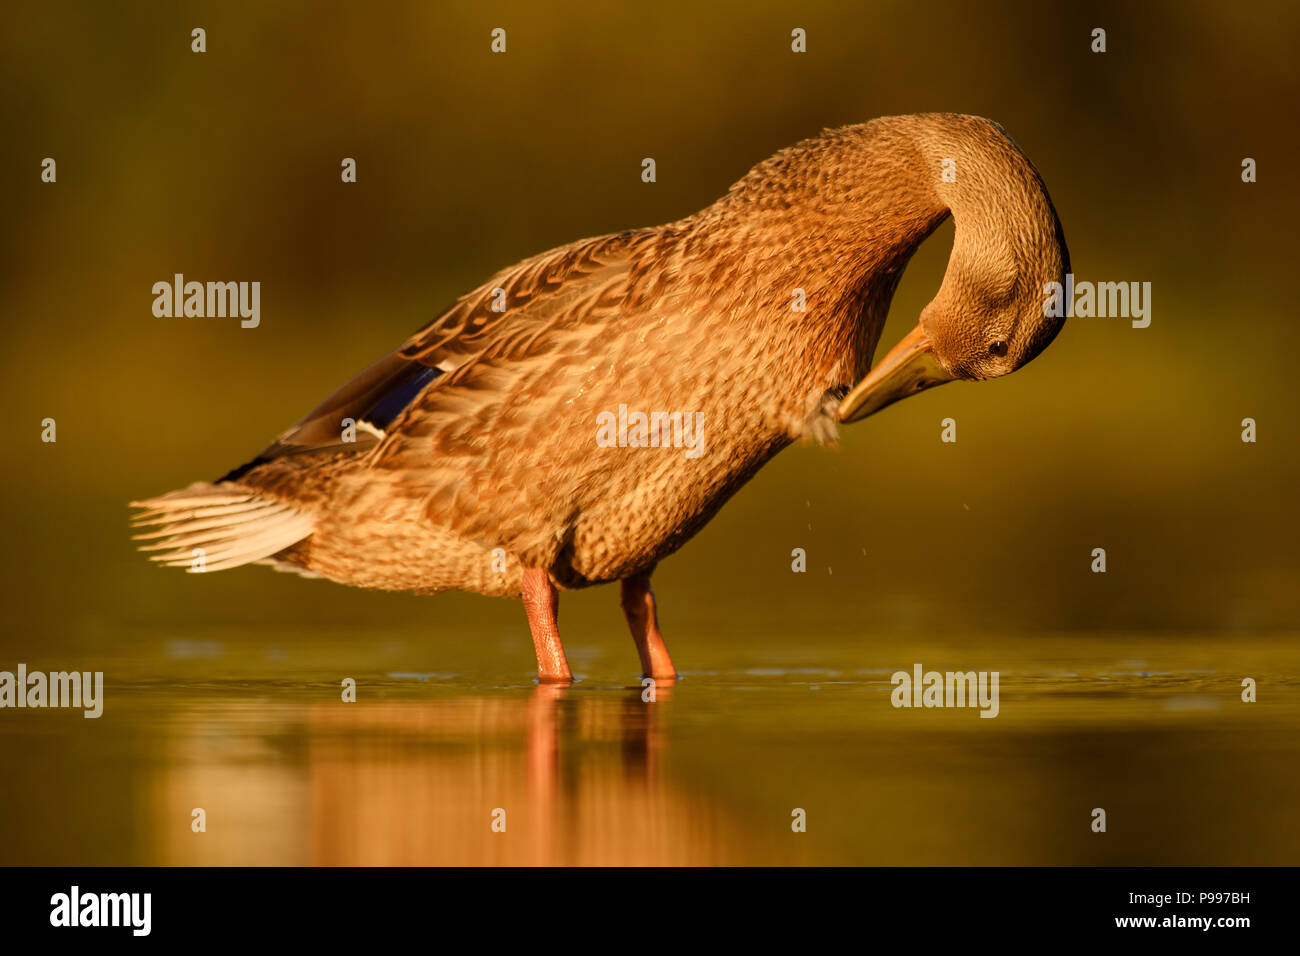 Ánade real - Anas platyrhynchos, aves comunes del agua de los ríos y lagos europeos. Foto de stock